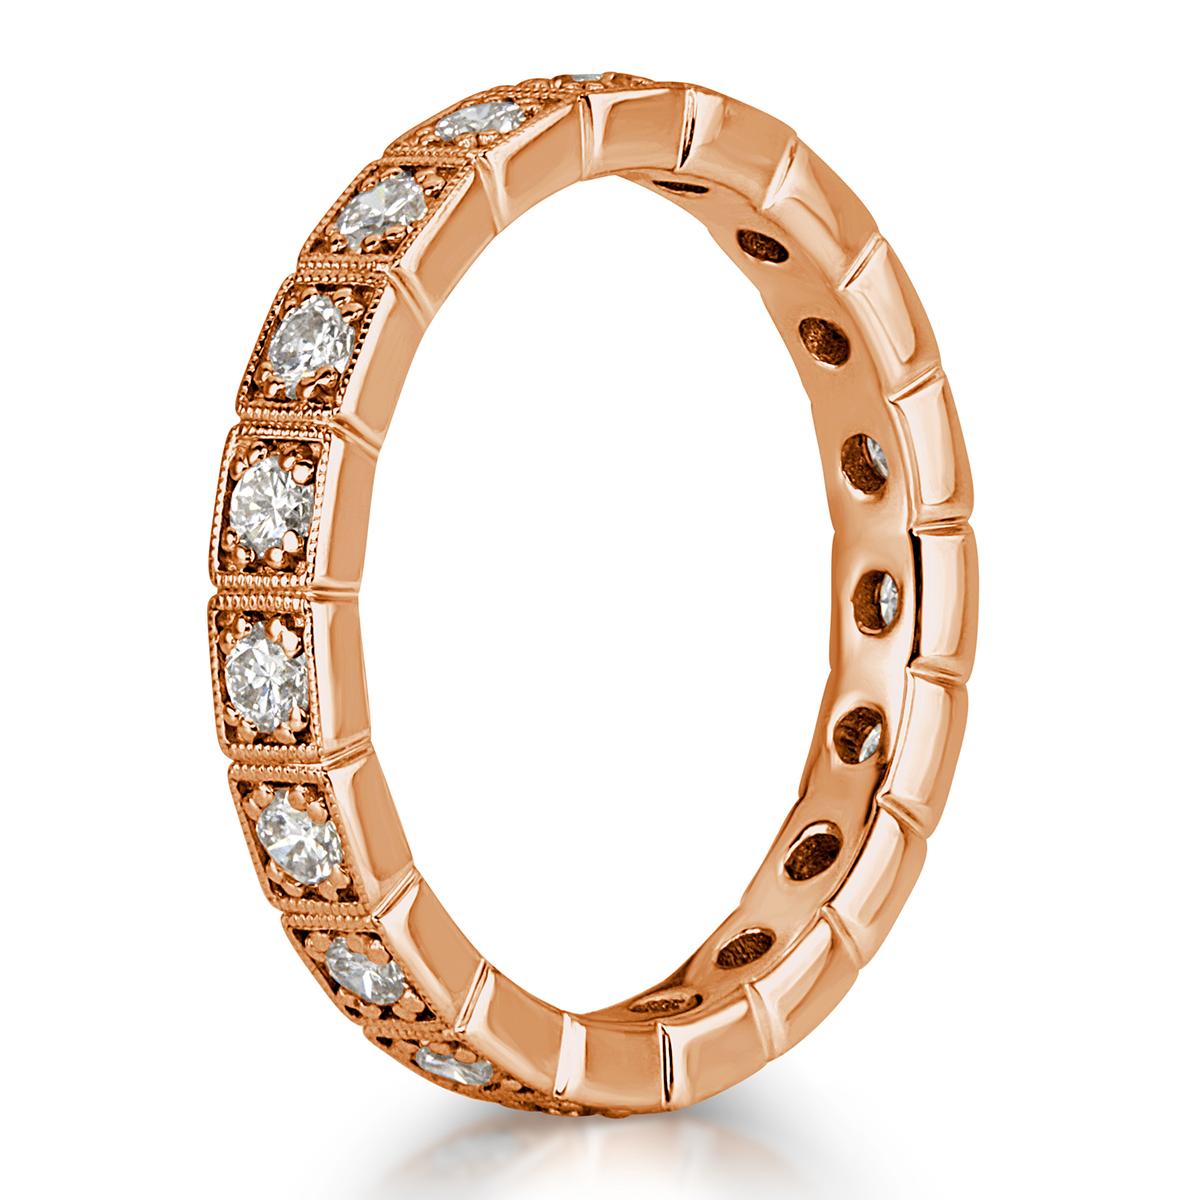 Fabriqué à la main en or rose 18 carats, cet anneau éternel en diamants exquis présente 0,80 ct de diamants ronds de taille brillante intégrés dans de jolis détails milgrain, mesurant 2,9 mm. Les diamants sont classés E-F en couleur, VS1-VS2 en